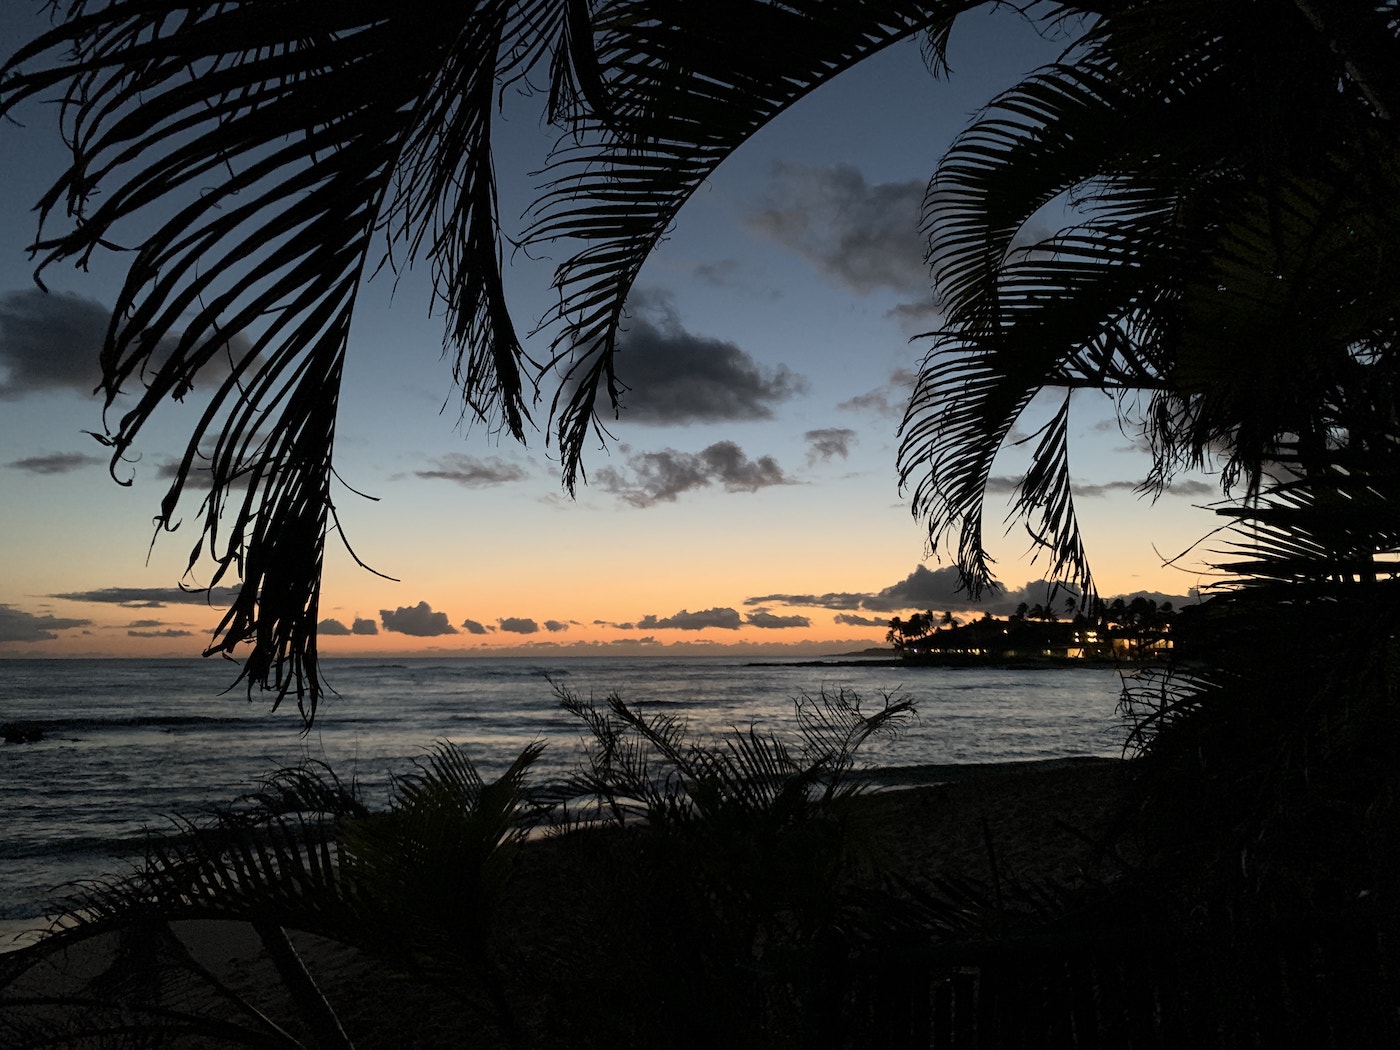 Dusk at Poipu Beach, Kaua&rsquo;i, moonlit ocean visible through silhouettes of palm trees